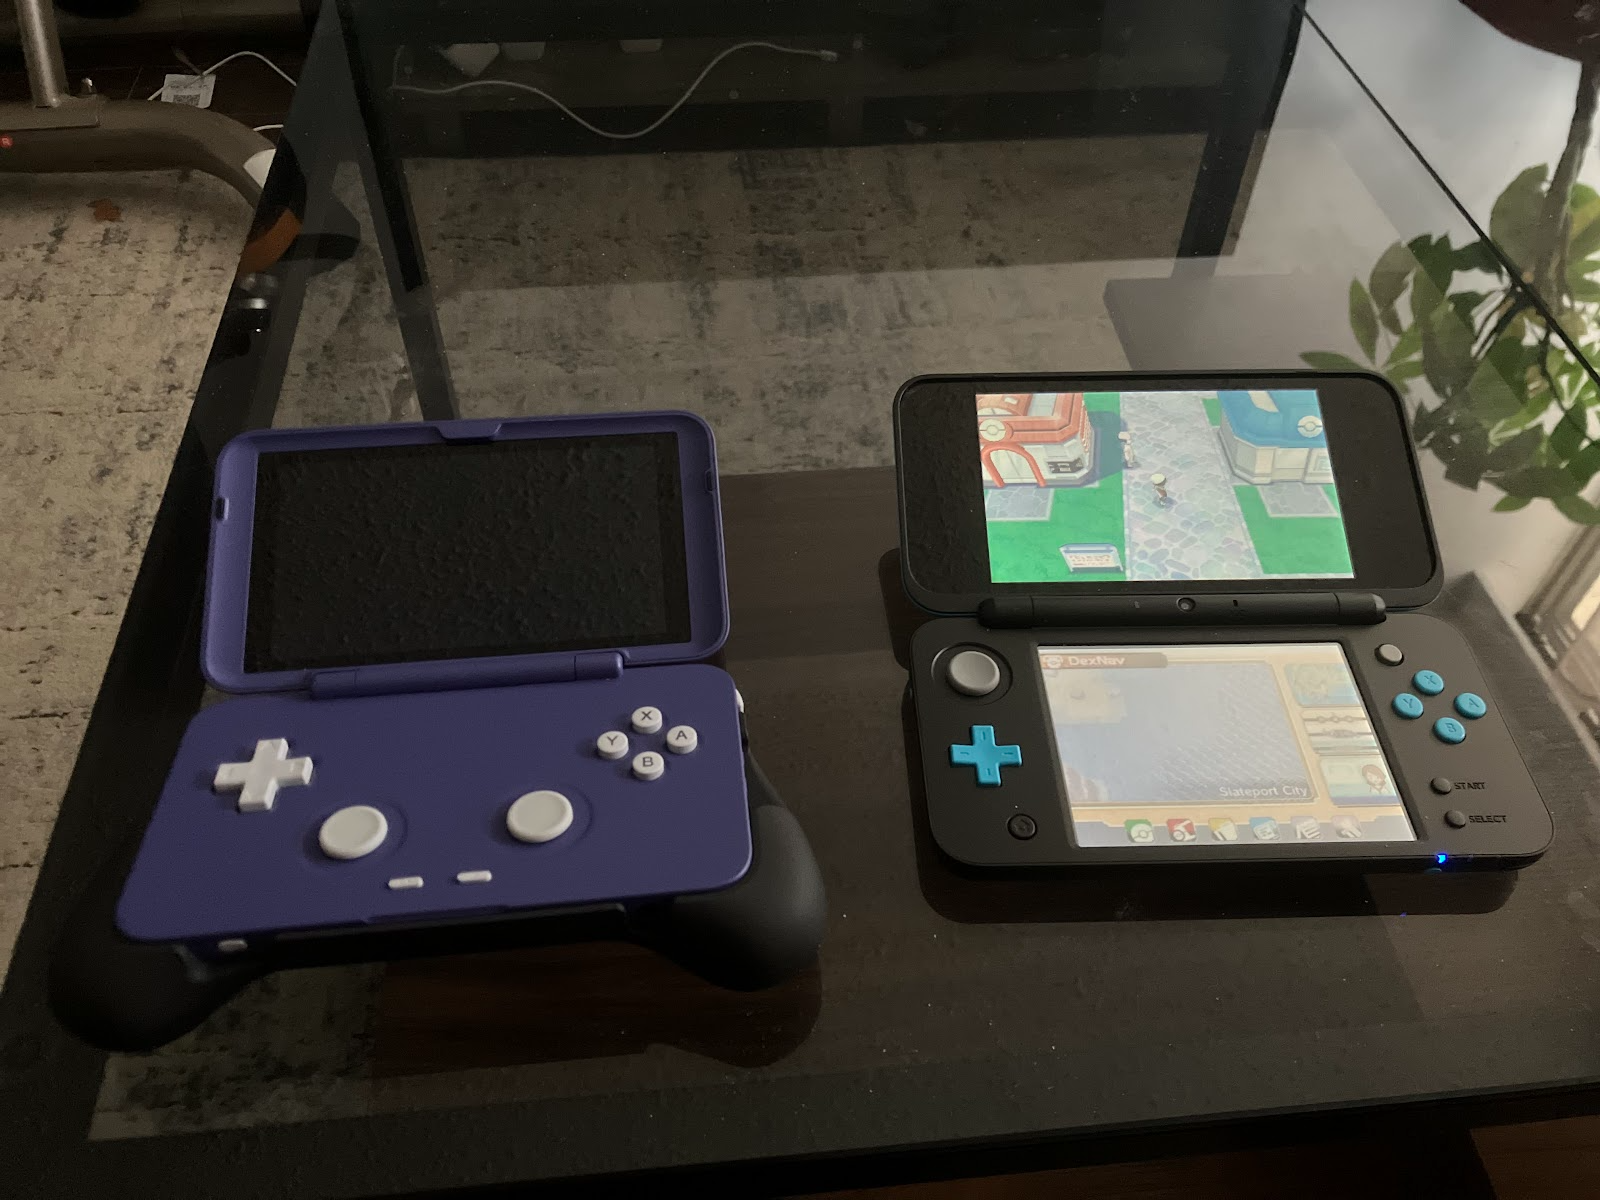 The Retroid Pocket Flip next to the Nintendo 2DSXL